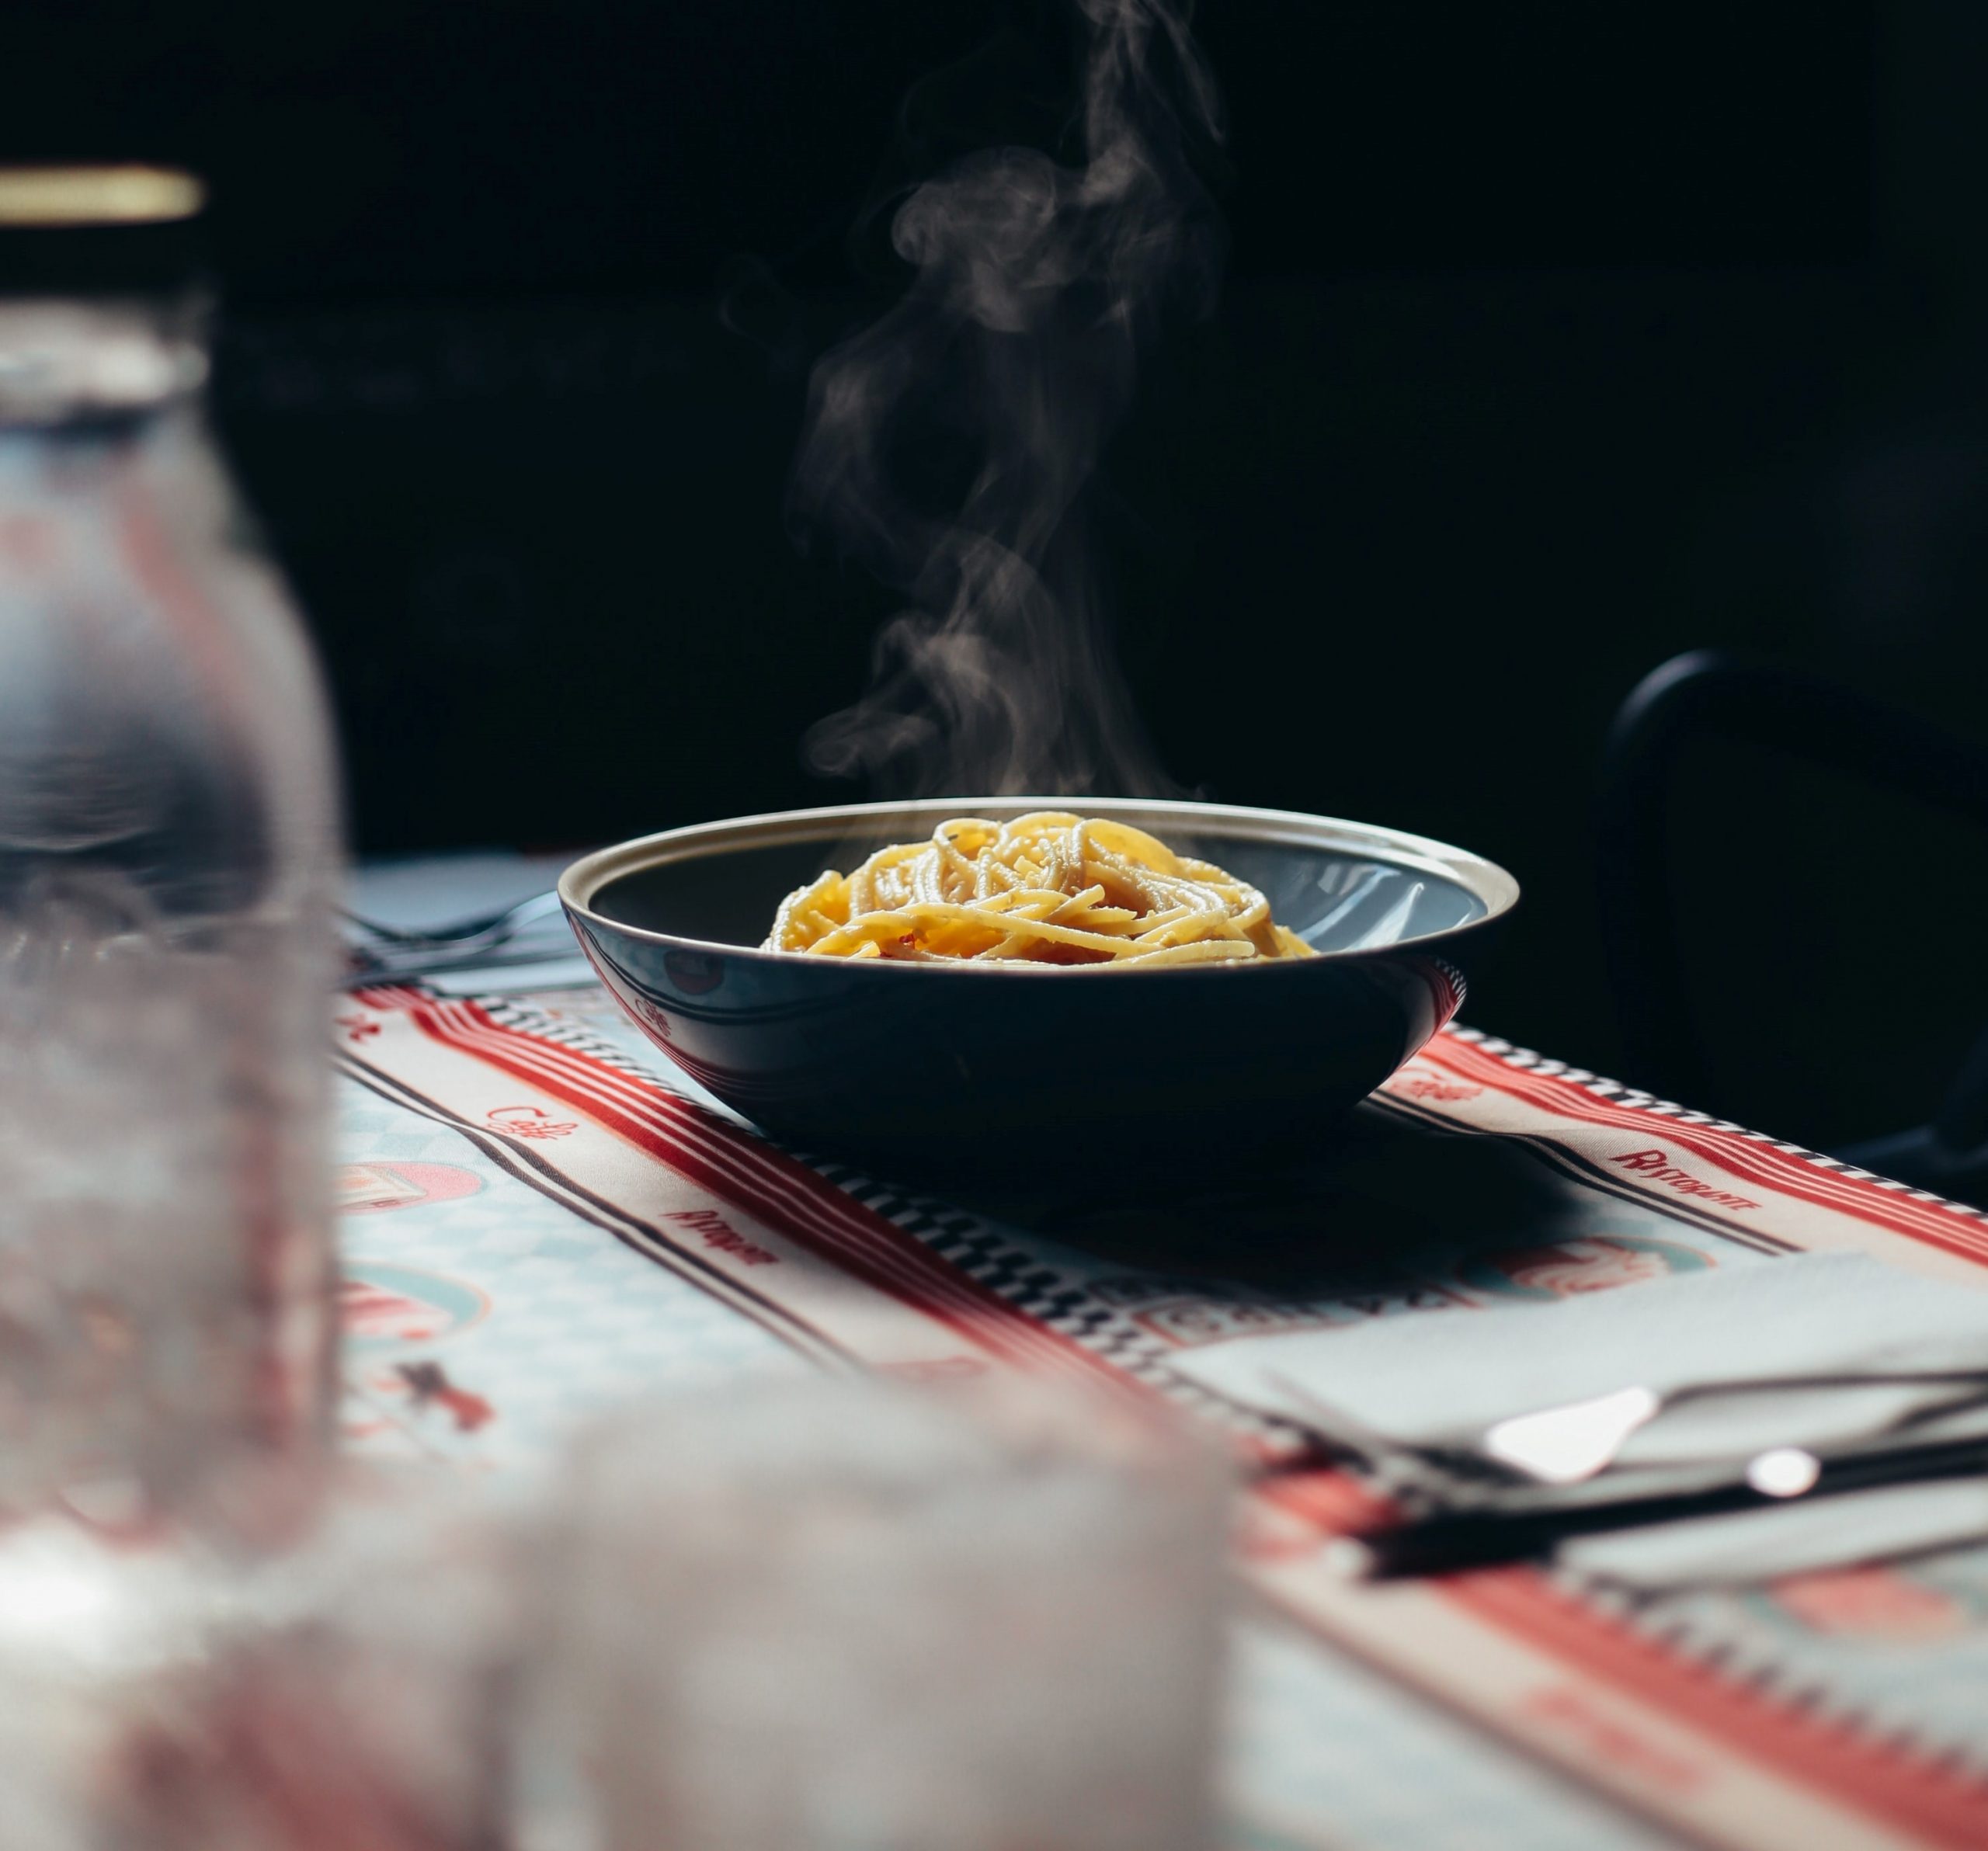 La pasta alla carbonara è uno dei piatti italiani più famosi e falsificati all’estero